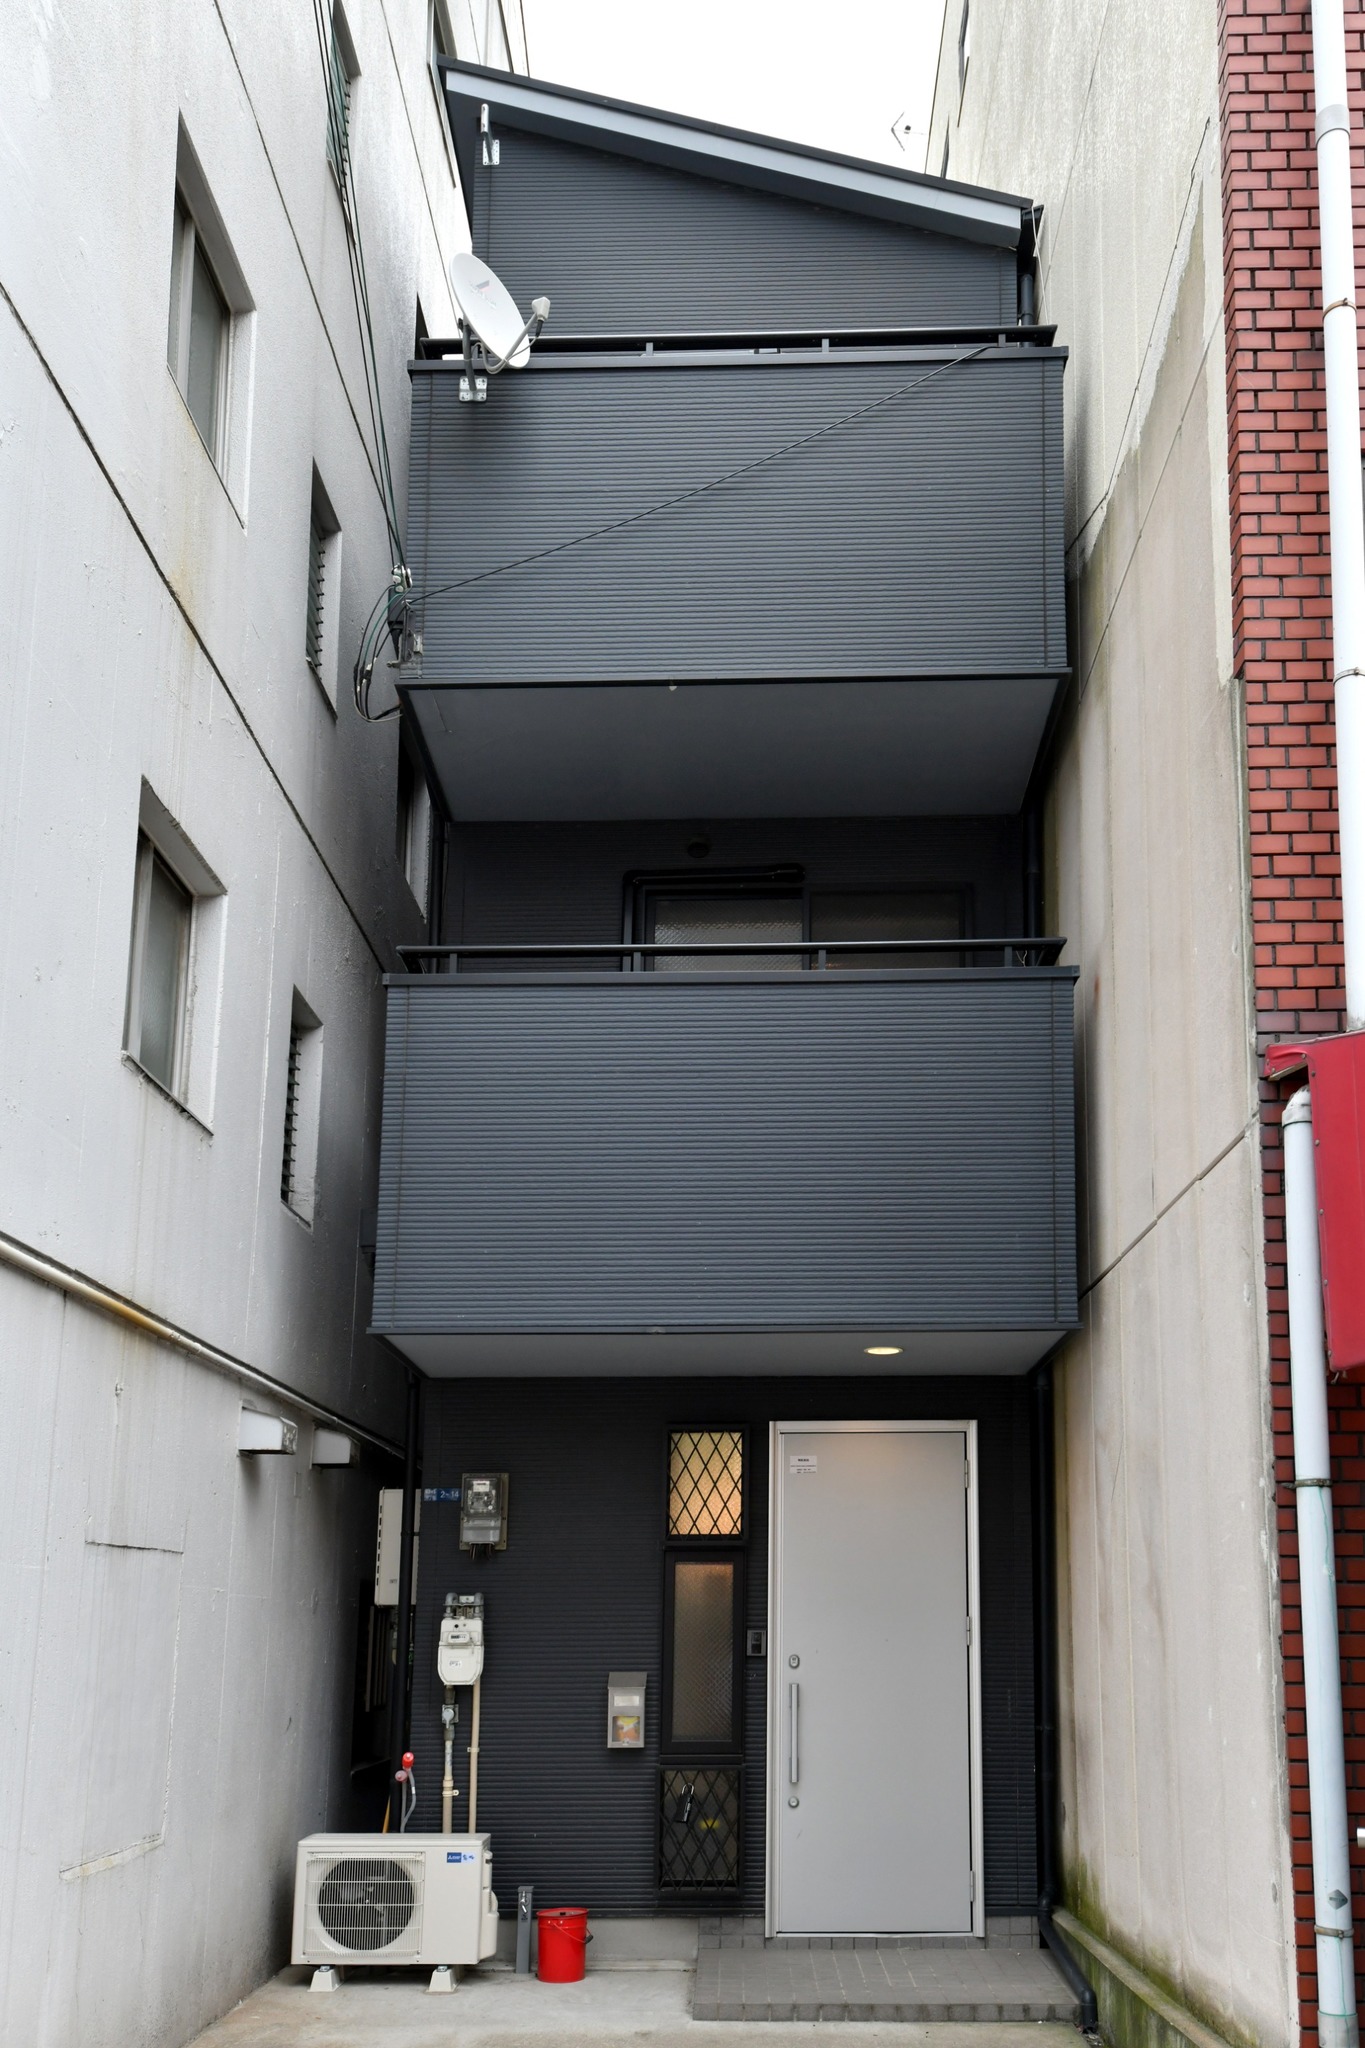 大阪の中心部!新今宮駅、萩之茶屋駅の近くの3階戸建て丸ごと貸切り。